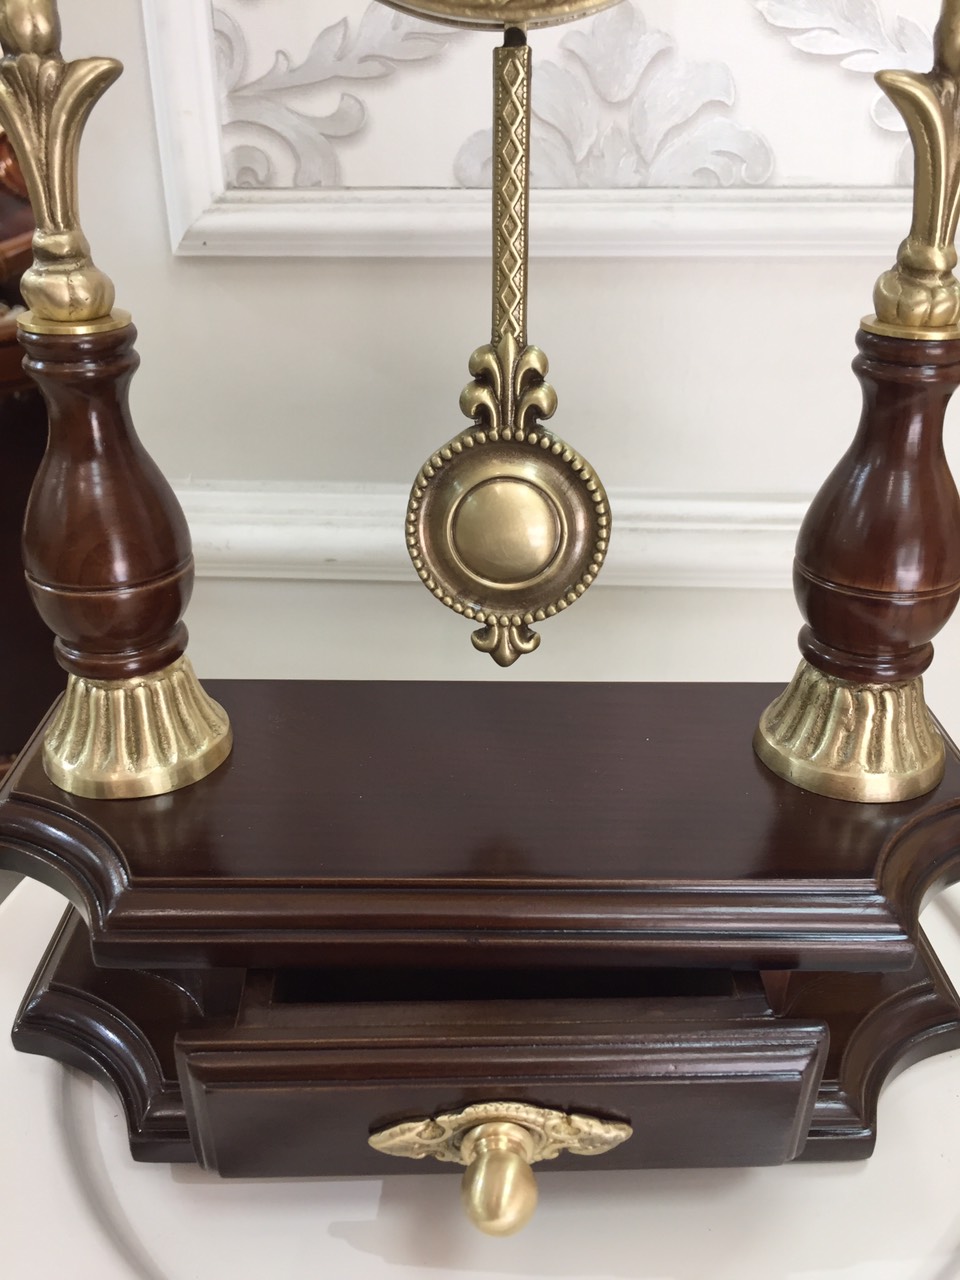 Đồng hồ quả lắc để bàn đồng và gỗ sồi, mặt kính cao cấp - Đồng hồ để bàn cổ điển đẹp sang trọng kích thước  25cm*10cm* 40cm để kệ tủ trang trí phòng khách nhà ở.